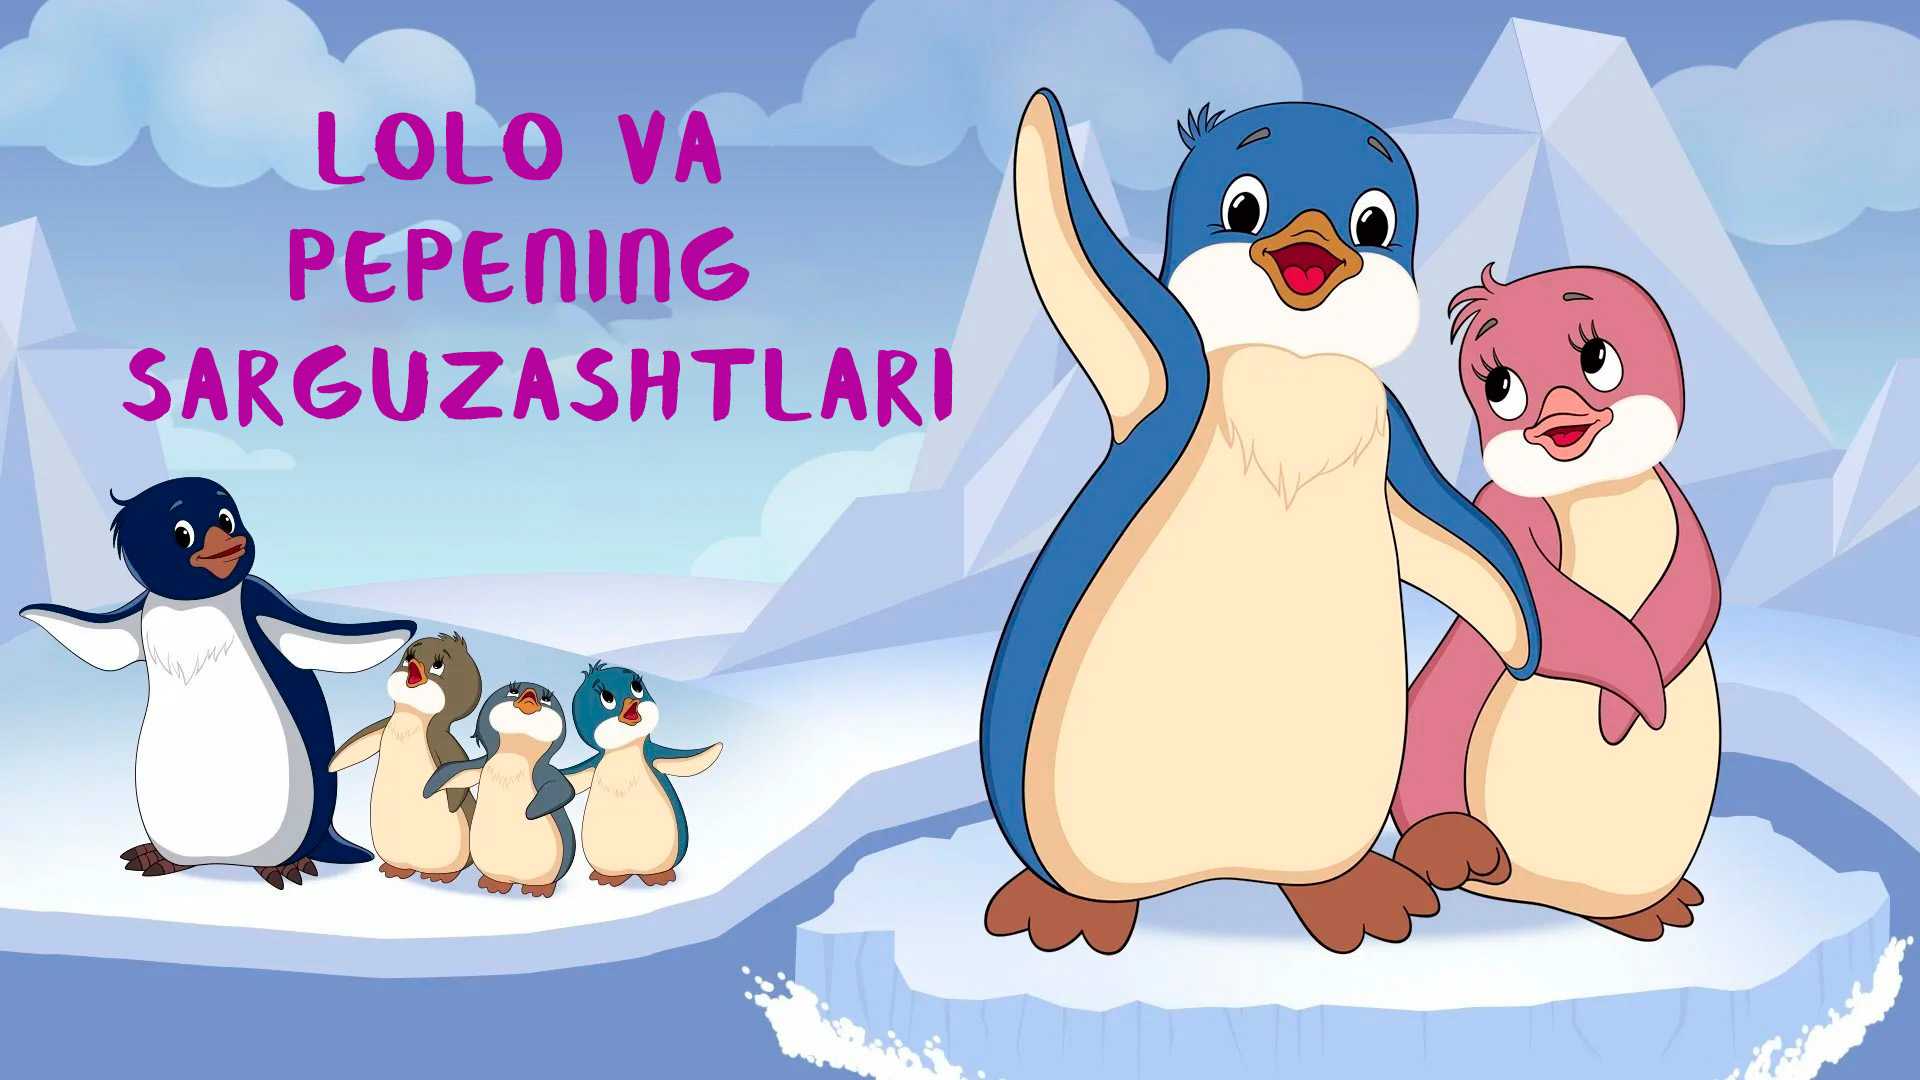 Pingvincha Loloning sarguzashtlari